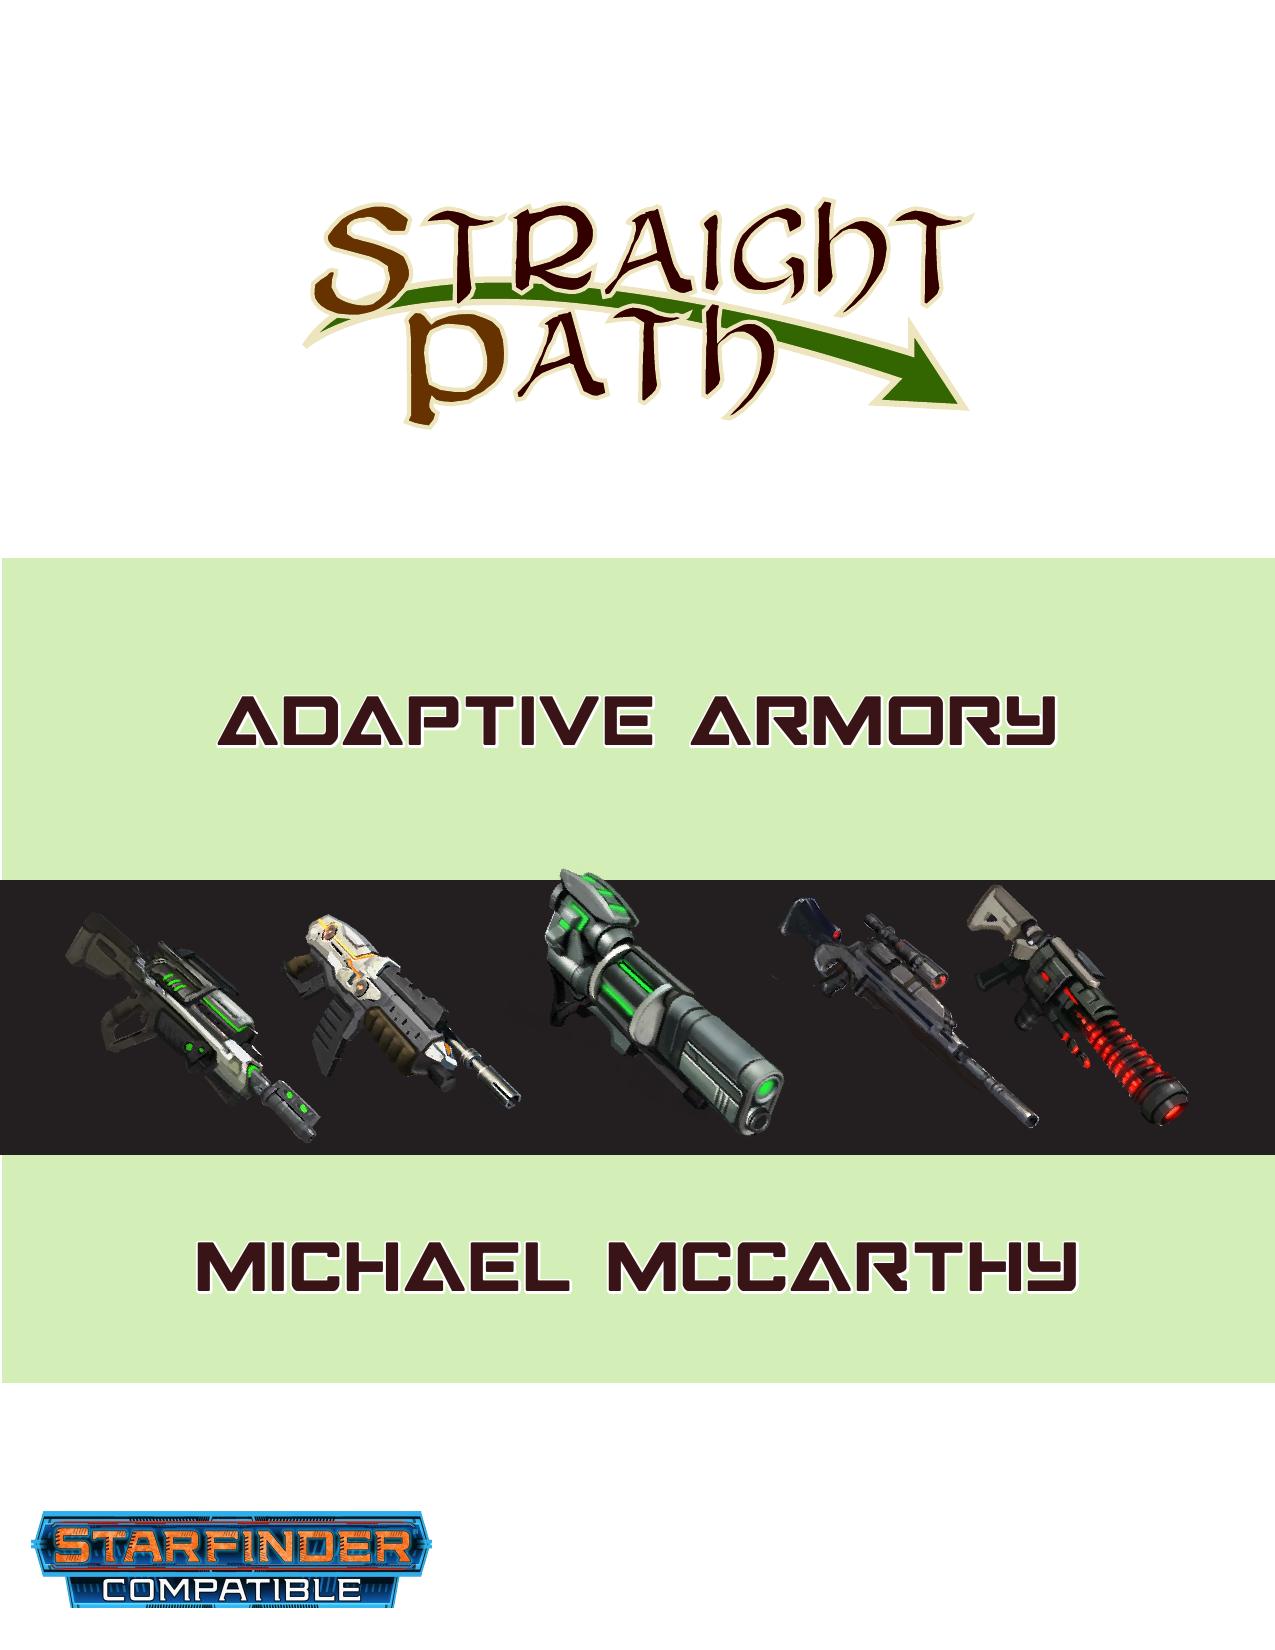 Adaptive Armory